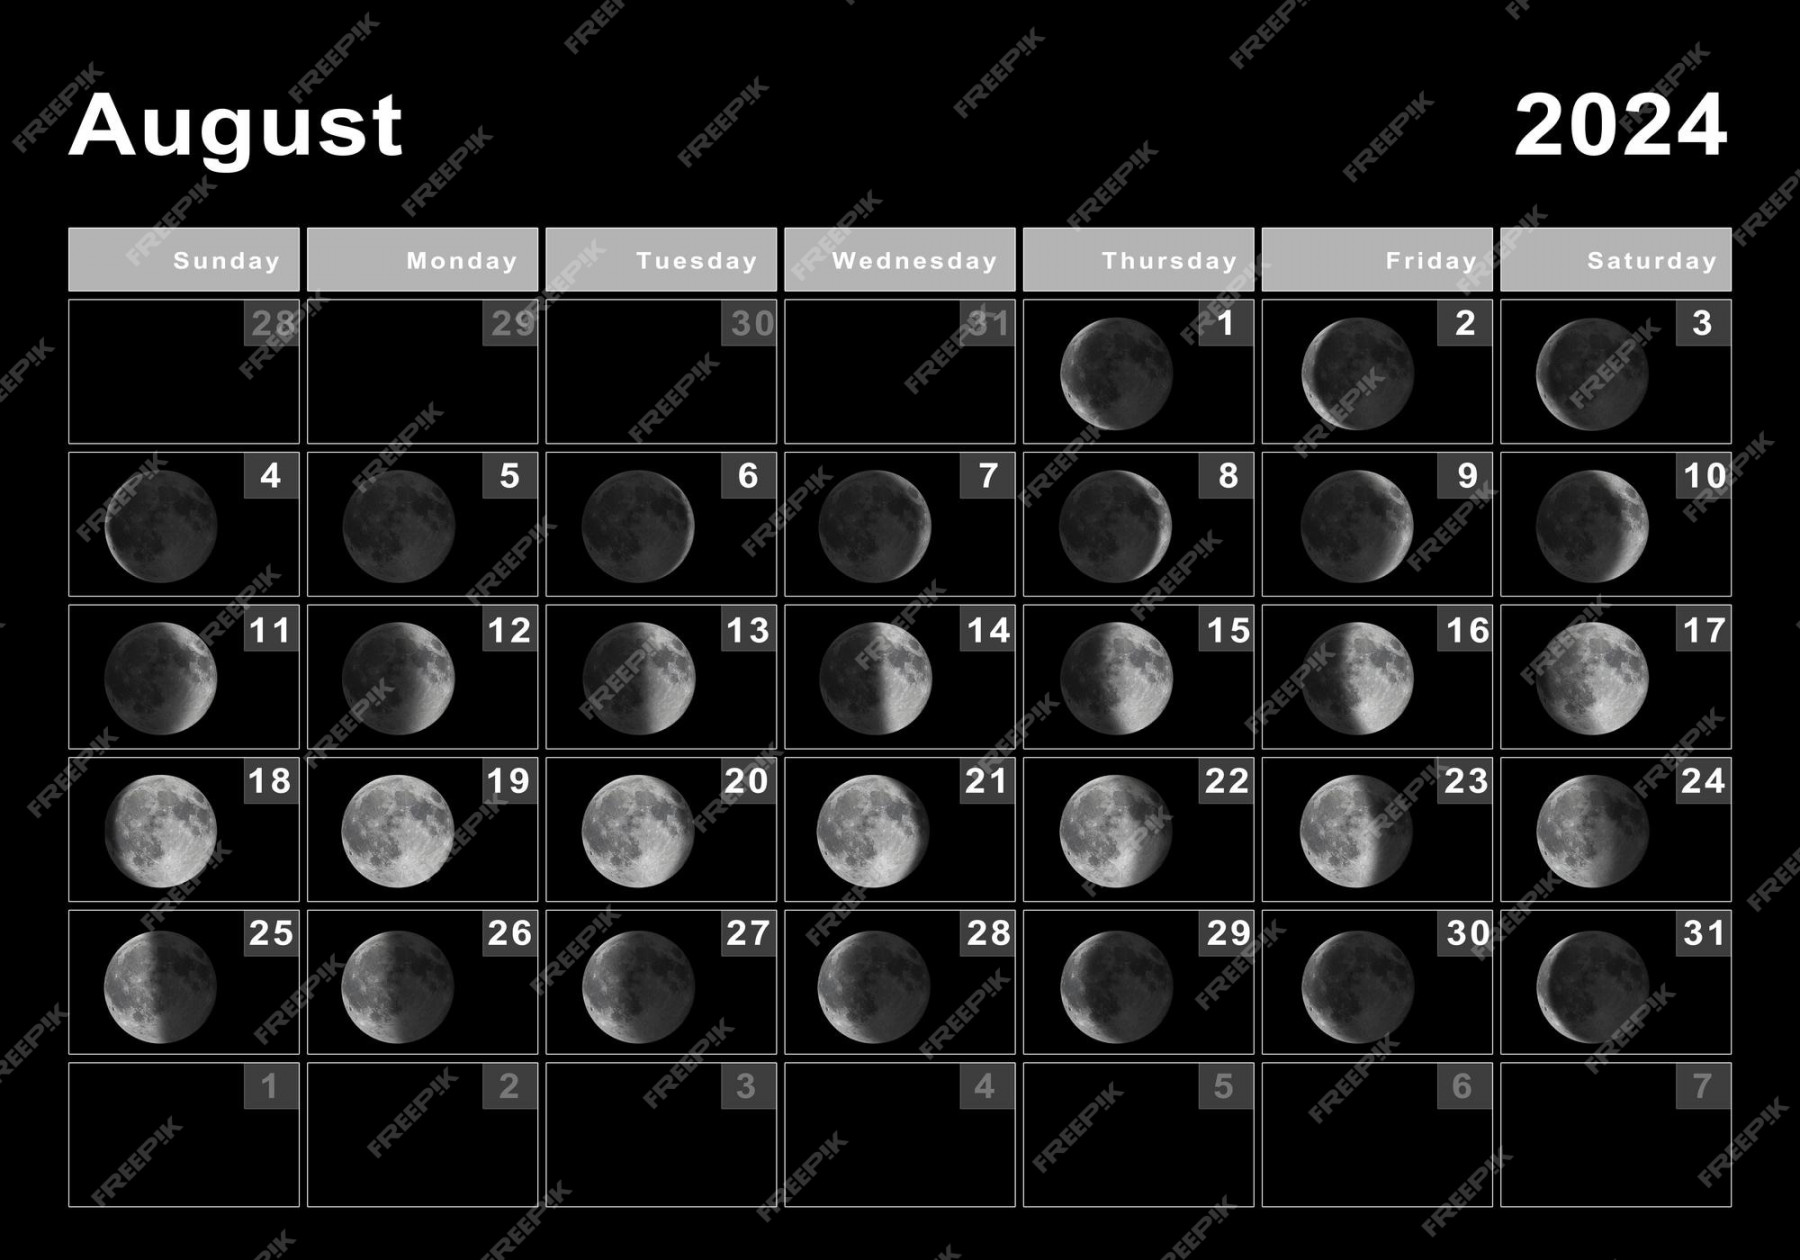 Premium Photo August lunar calendar, moon cycles, moon phases